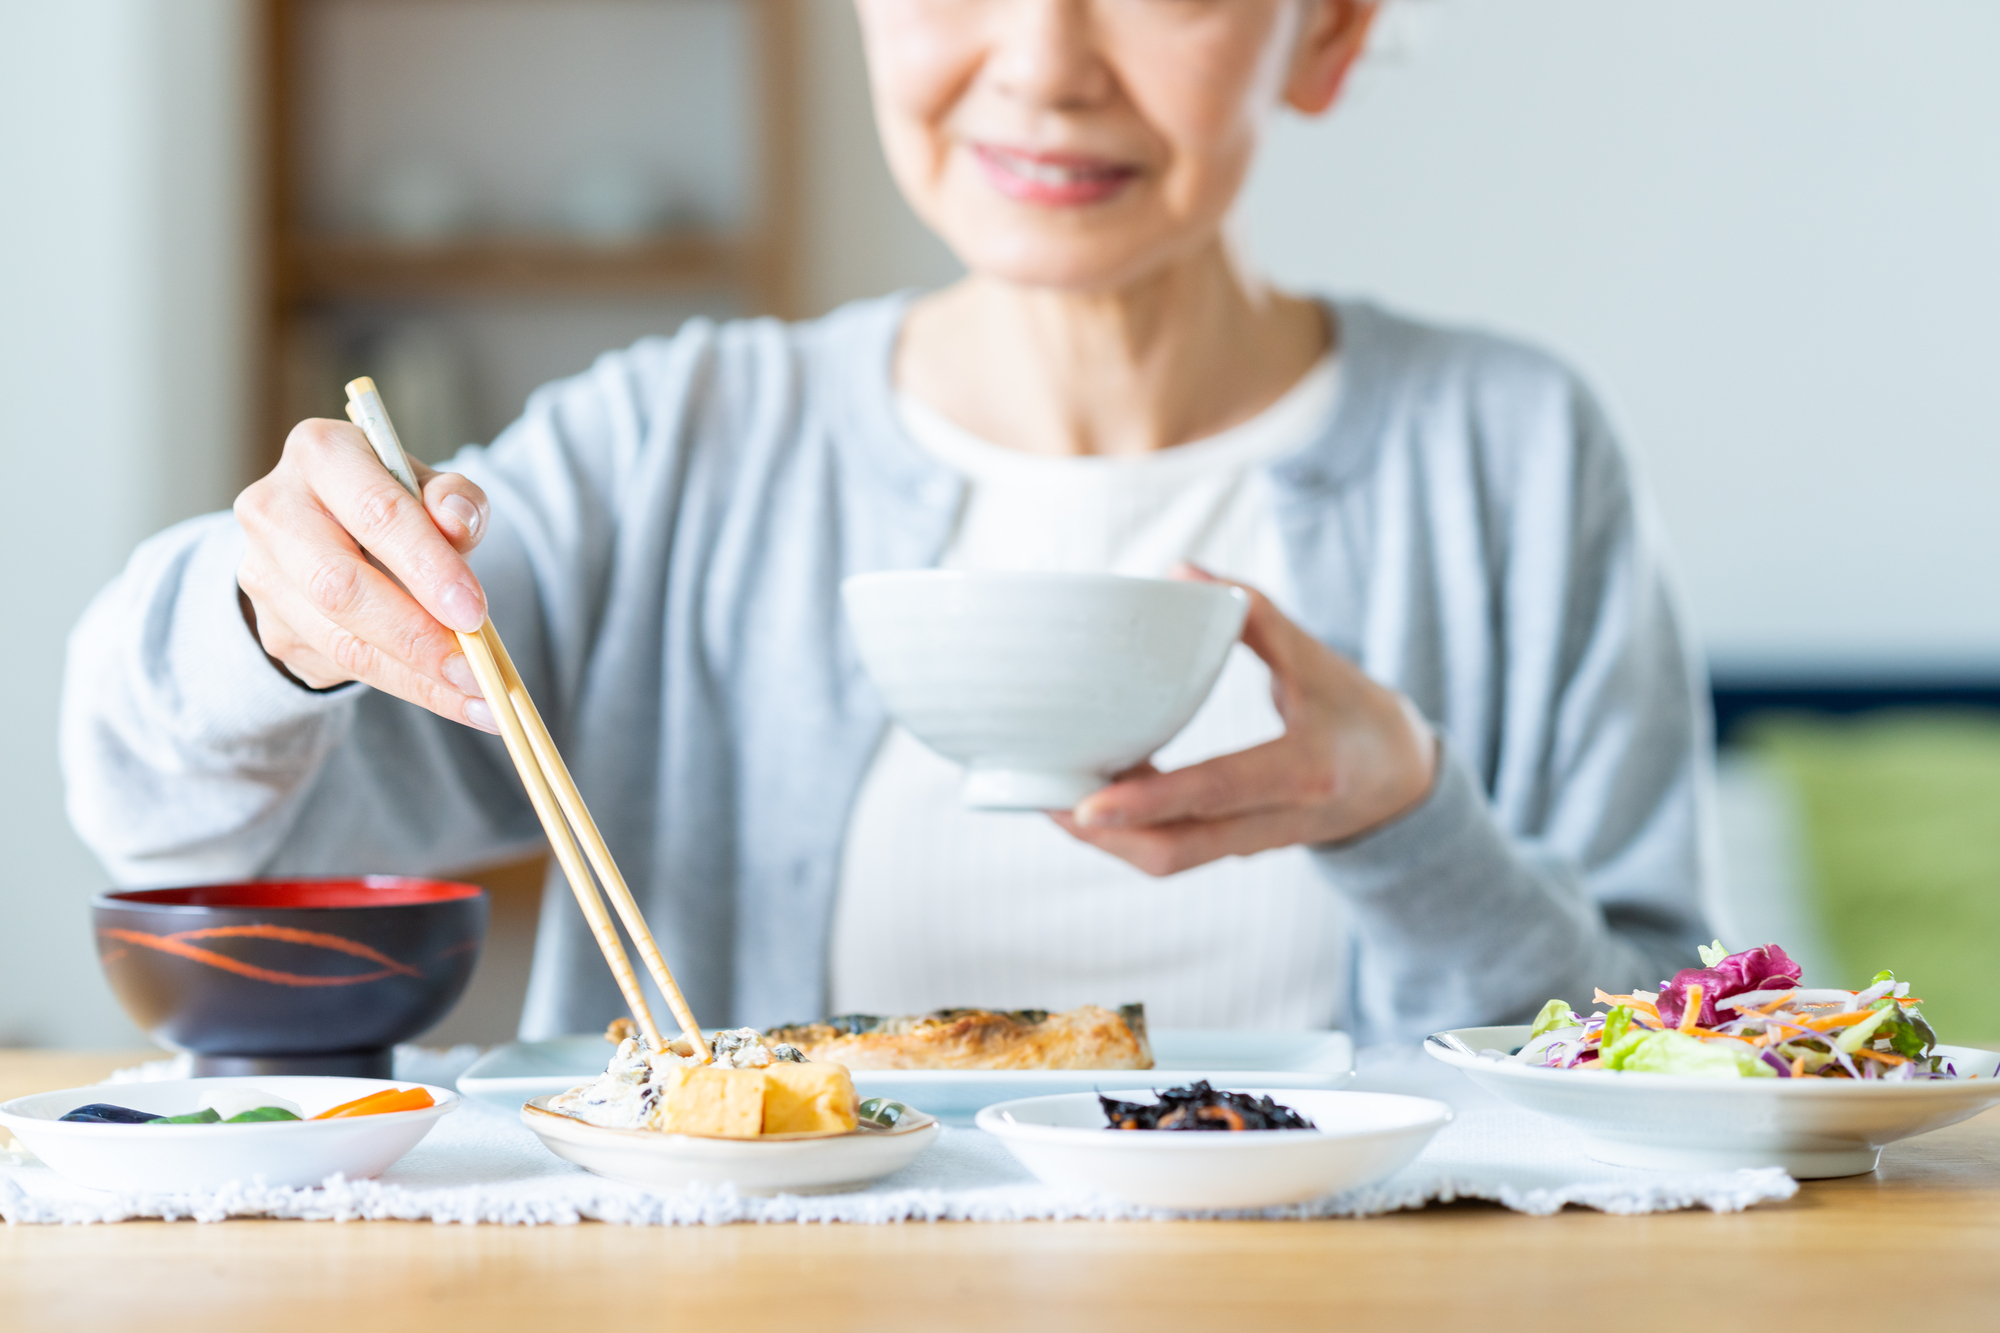 和食の朝ごはんを食べているシニア世代